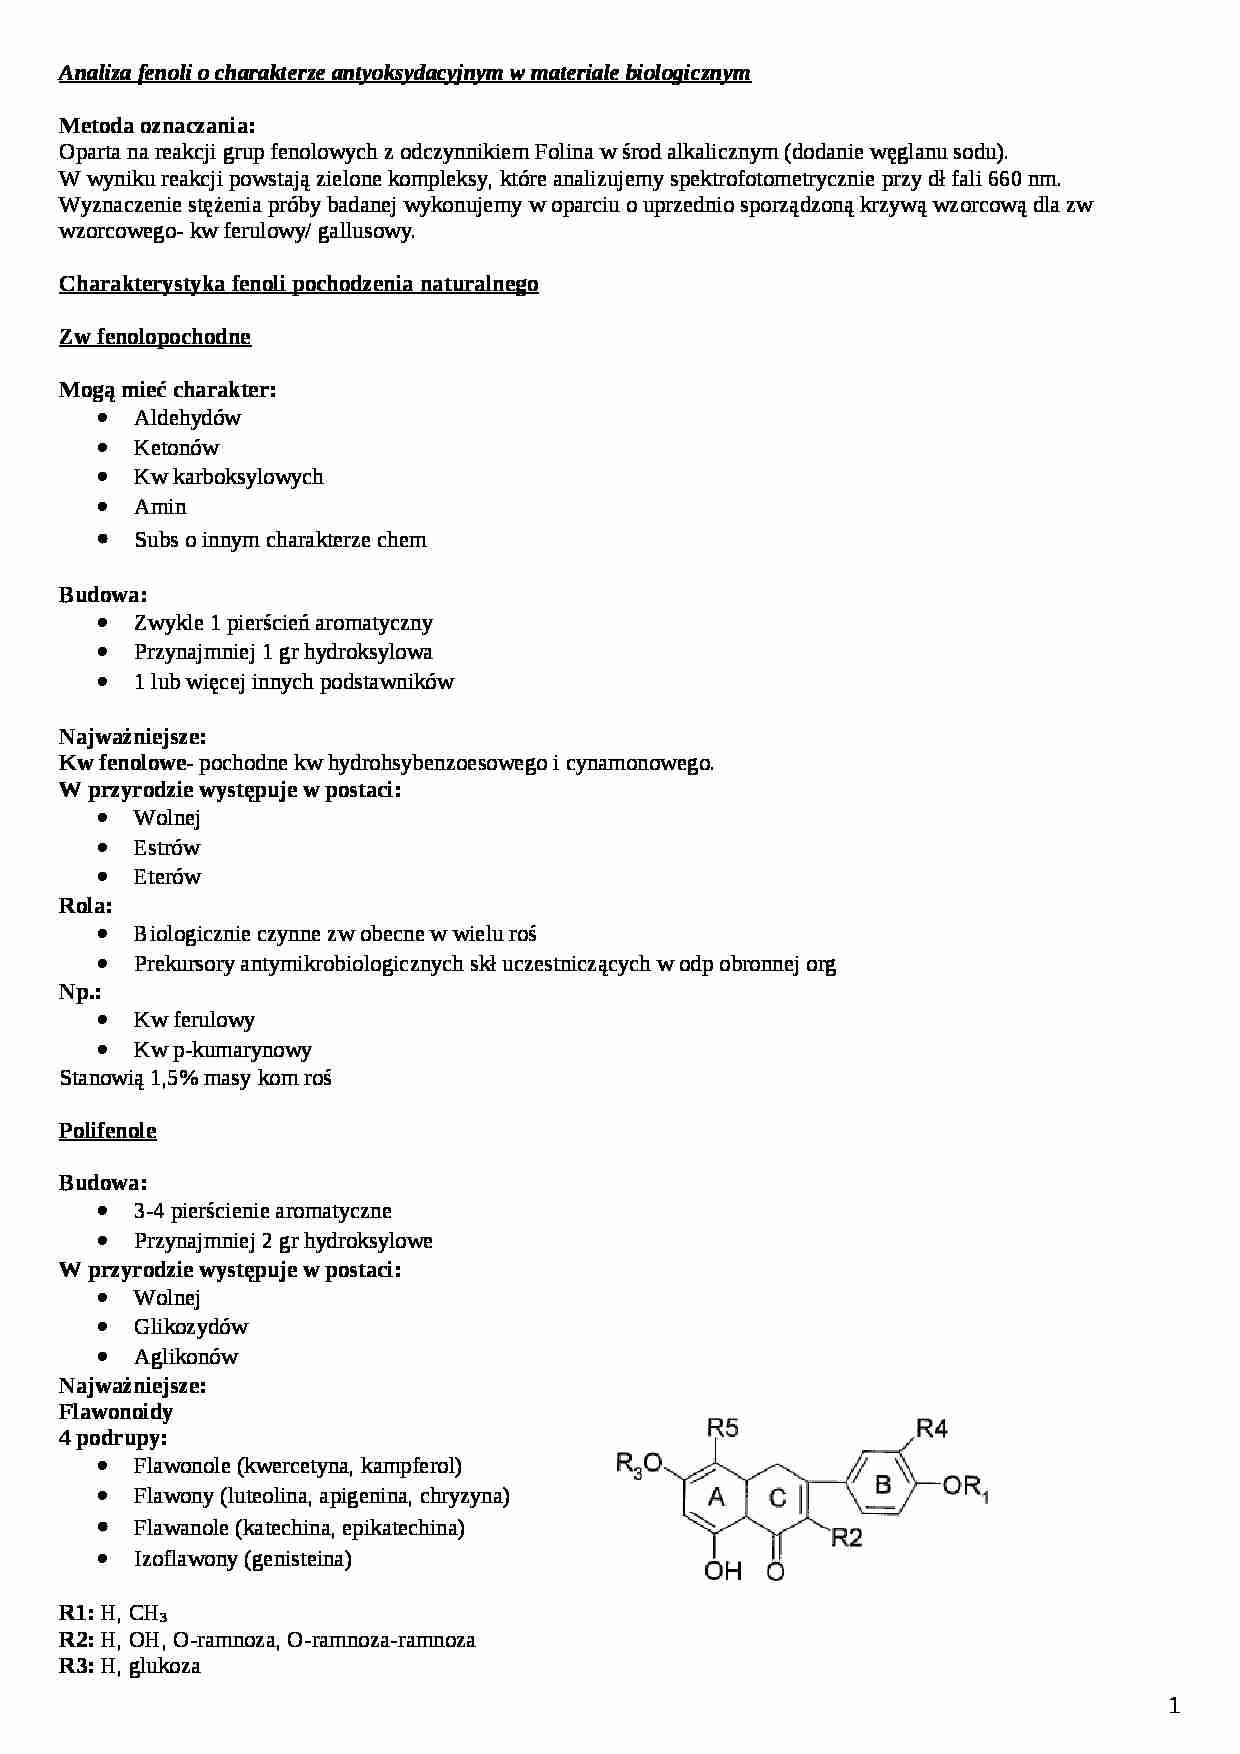  Analiza fenoli o charakterze antyoksydacyjnym w materiale biologicznym - omówienie - strona 1